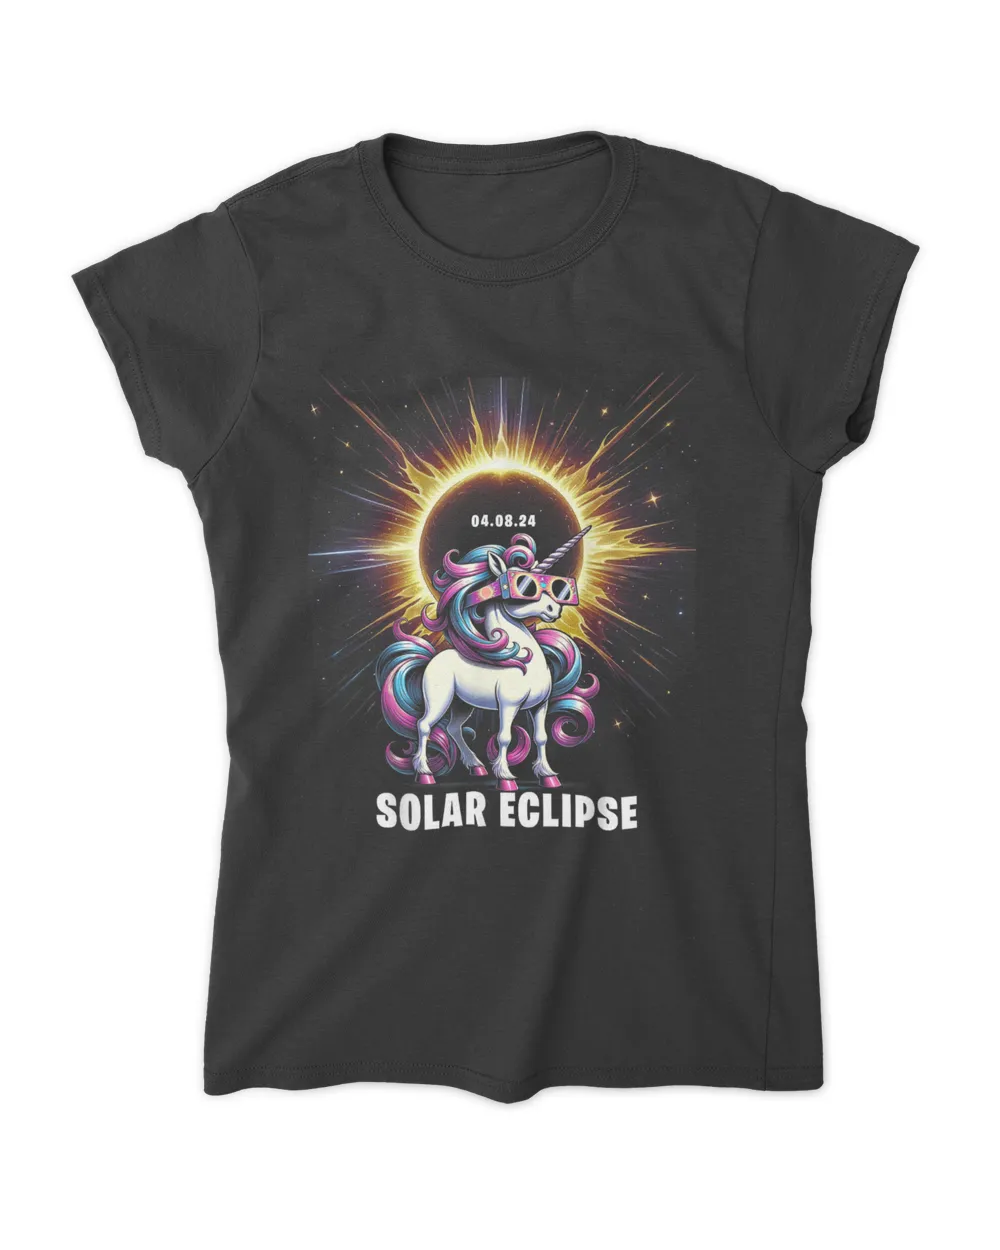 Solar Eclipse 2024 Shirt Total Eclipse April 8th 2